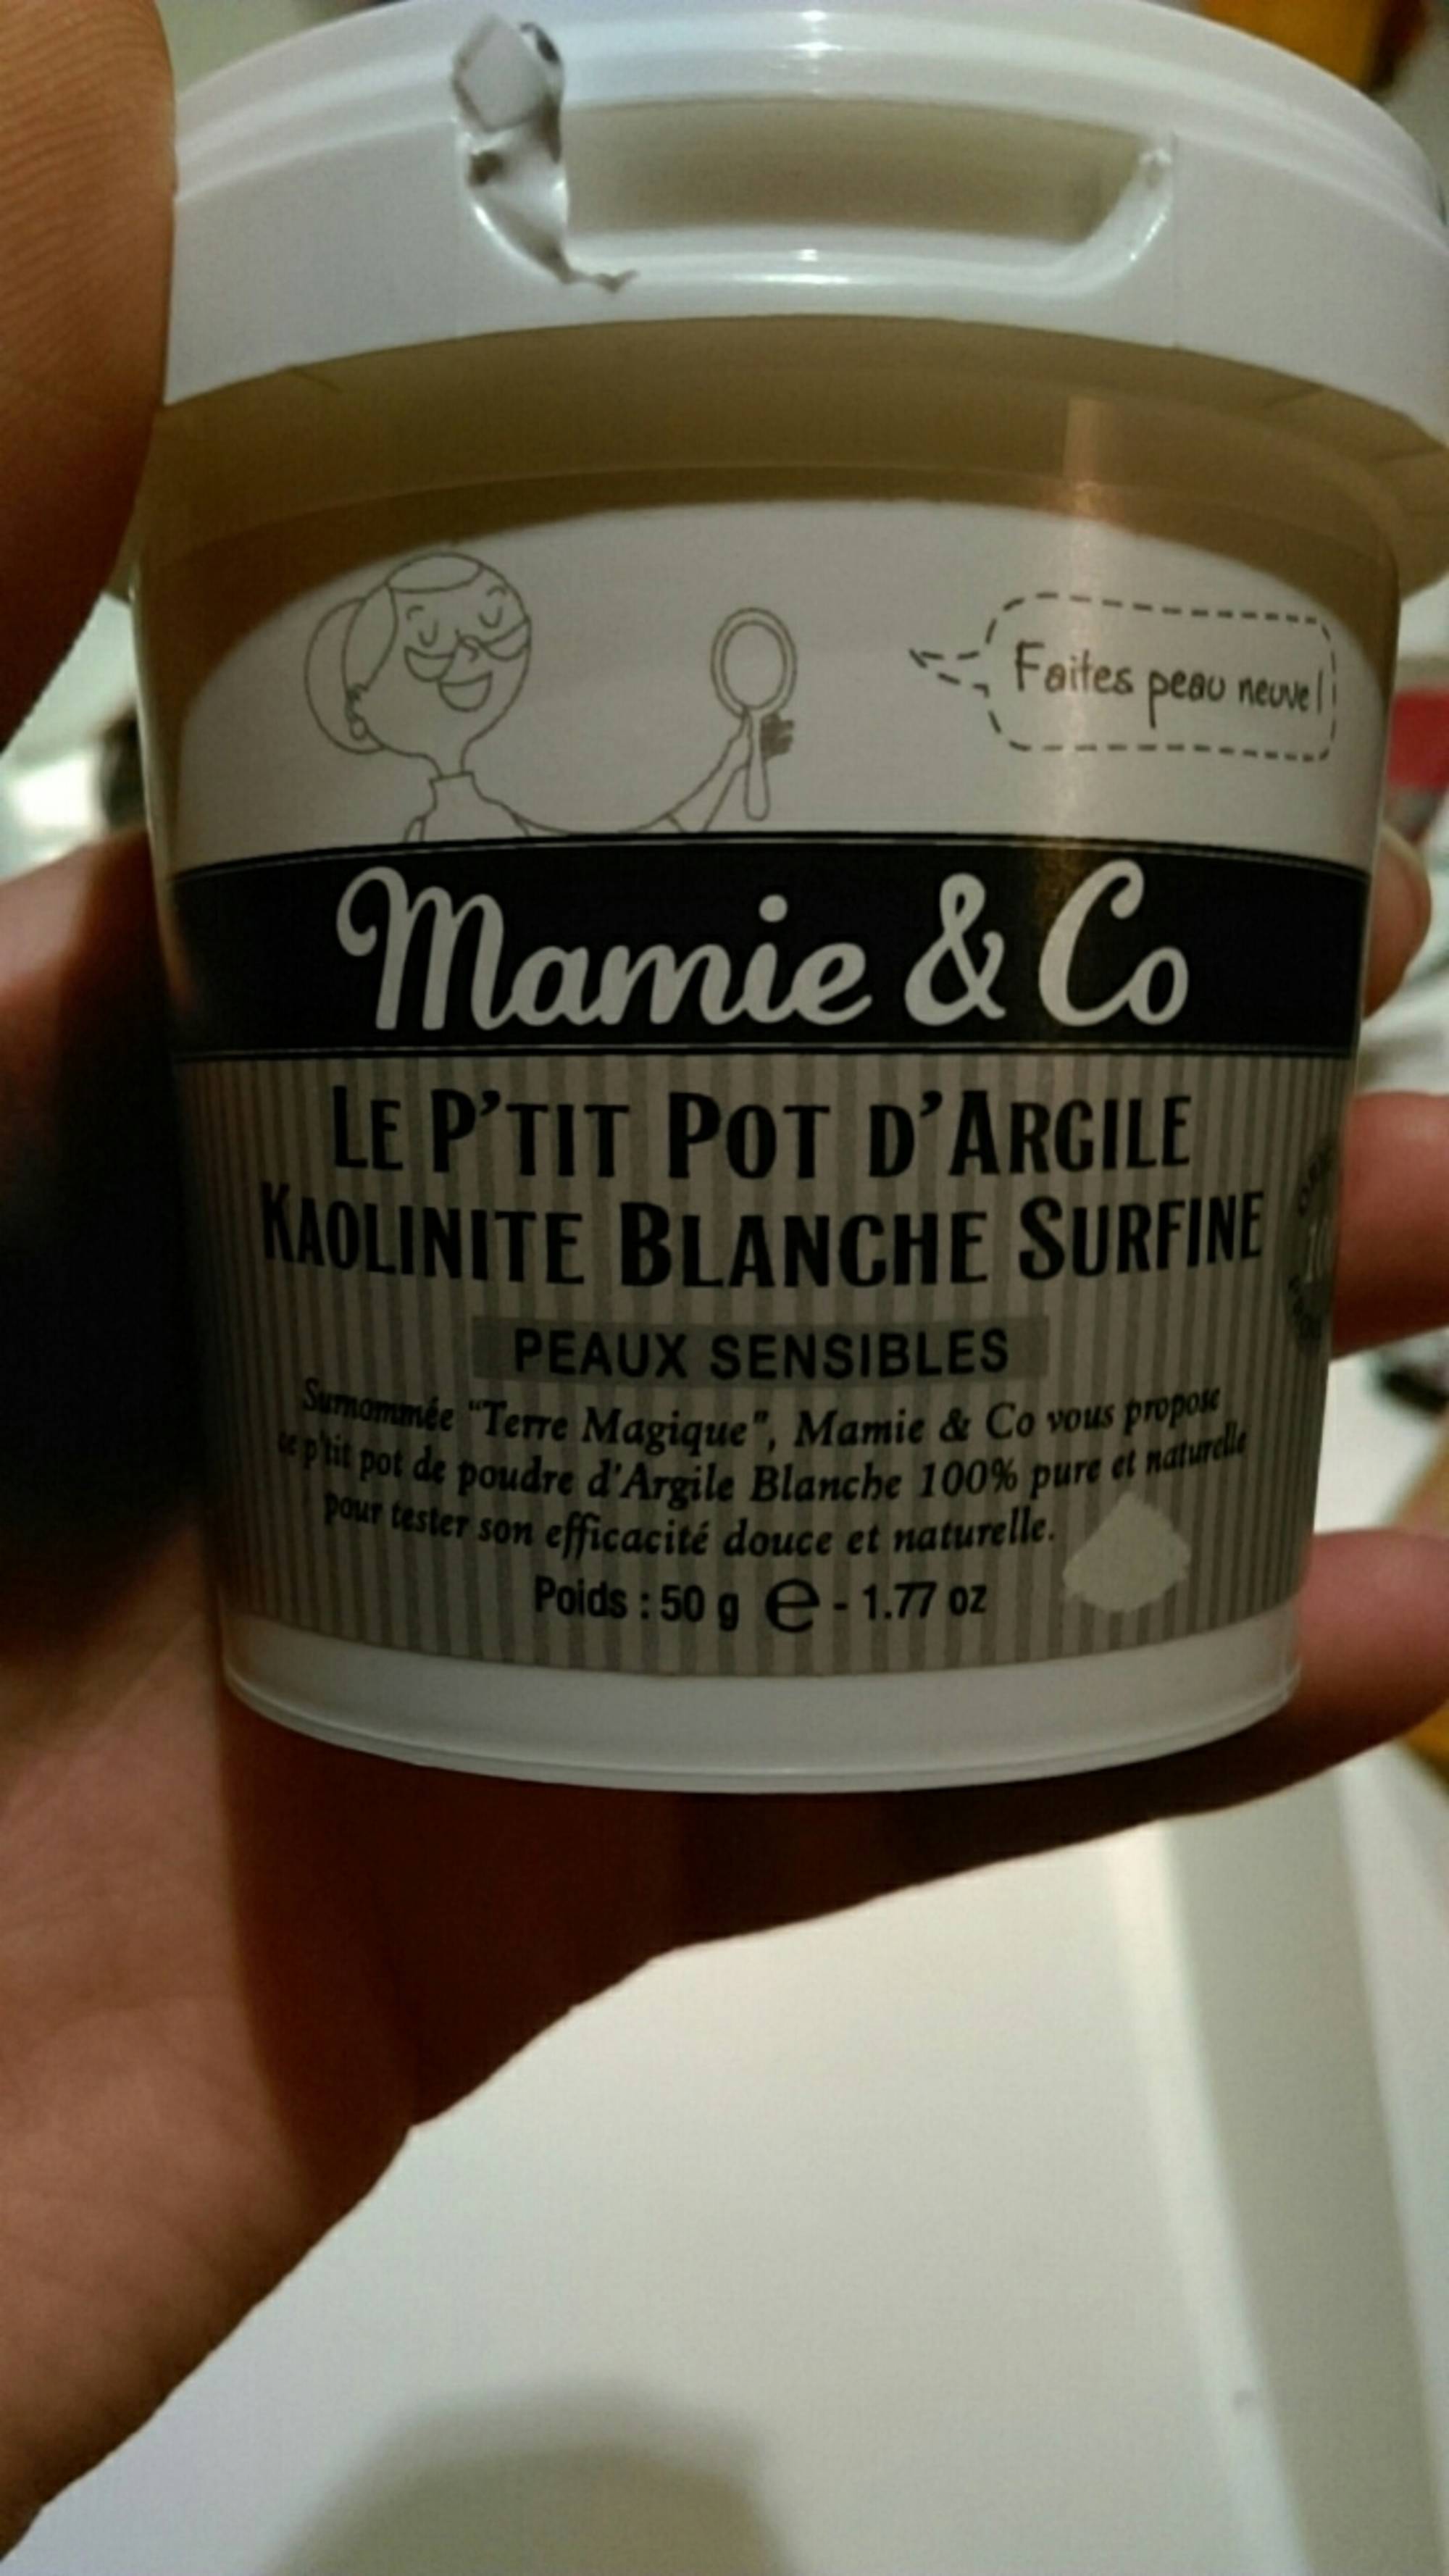 Composition MAMIE & CO Le p'tit pot d'argile - Kaolinite blanche surfine -  UFC-Que Choisir